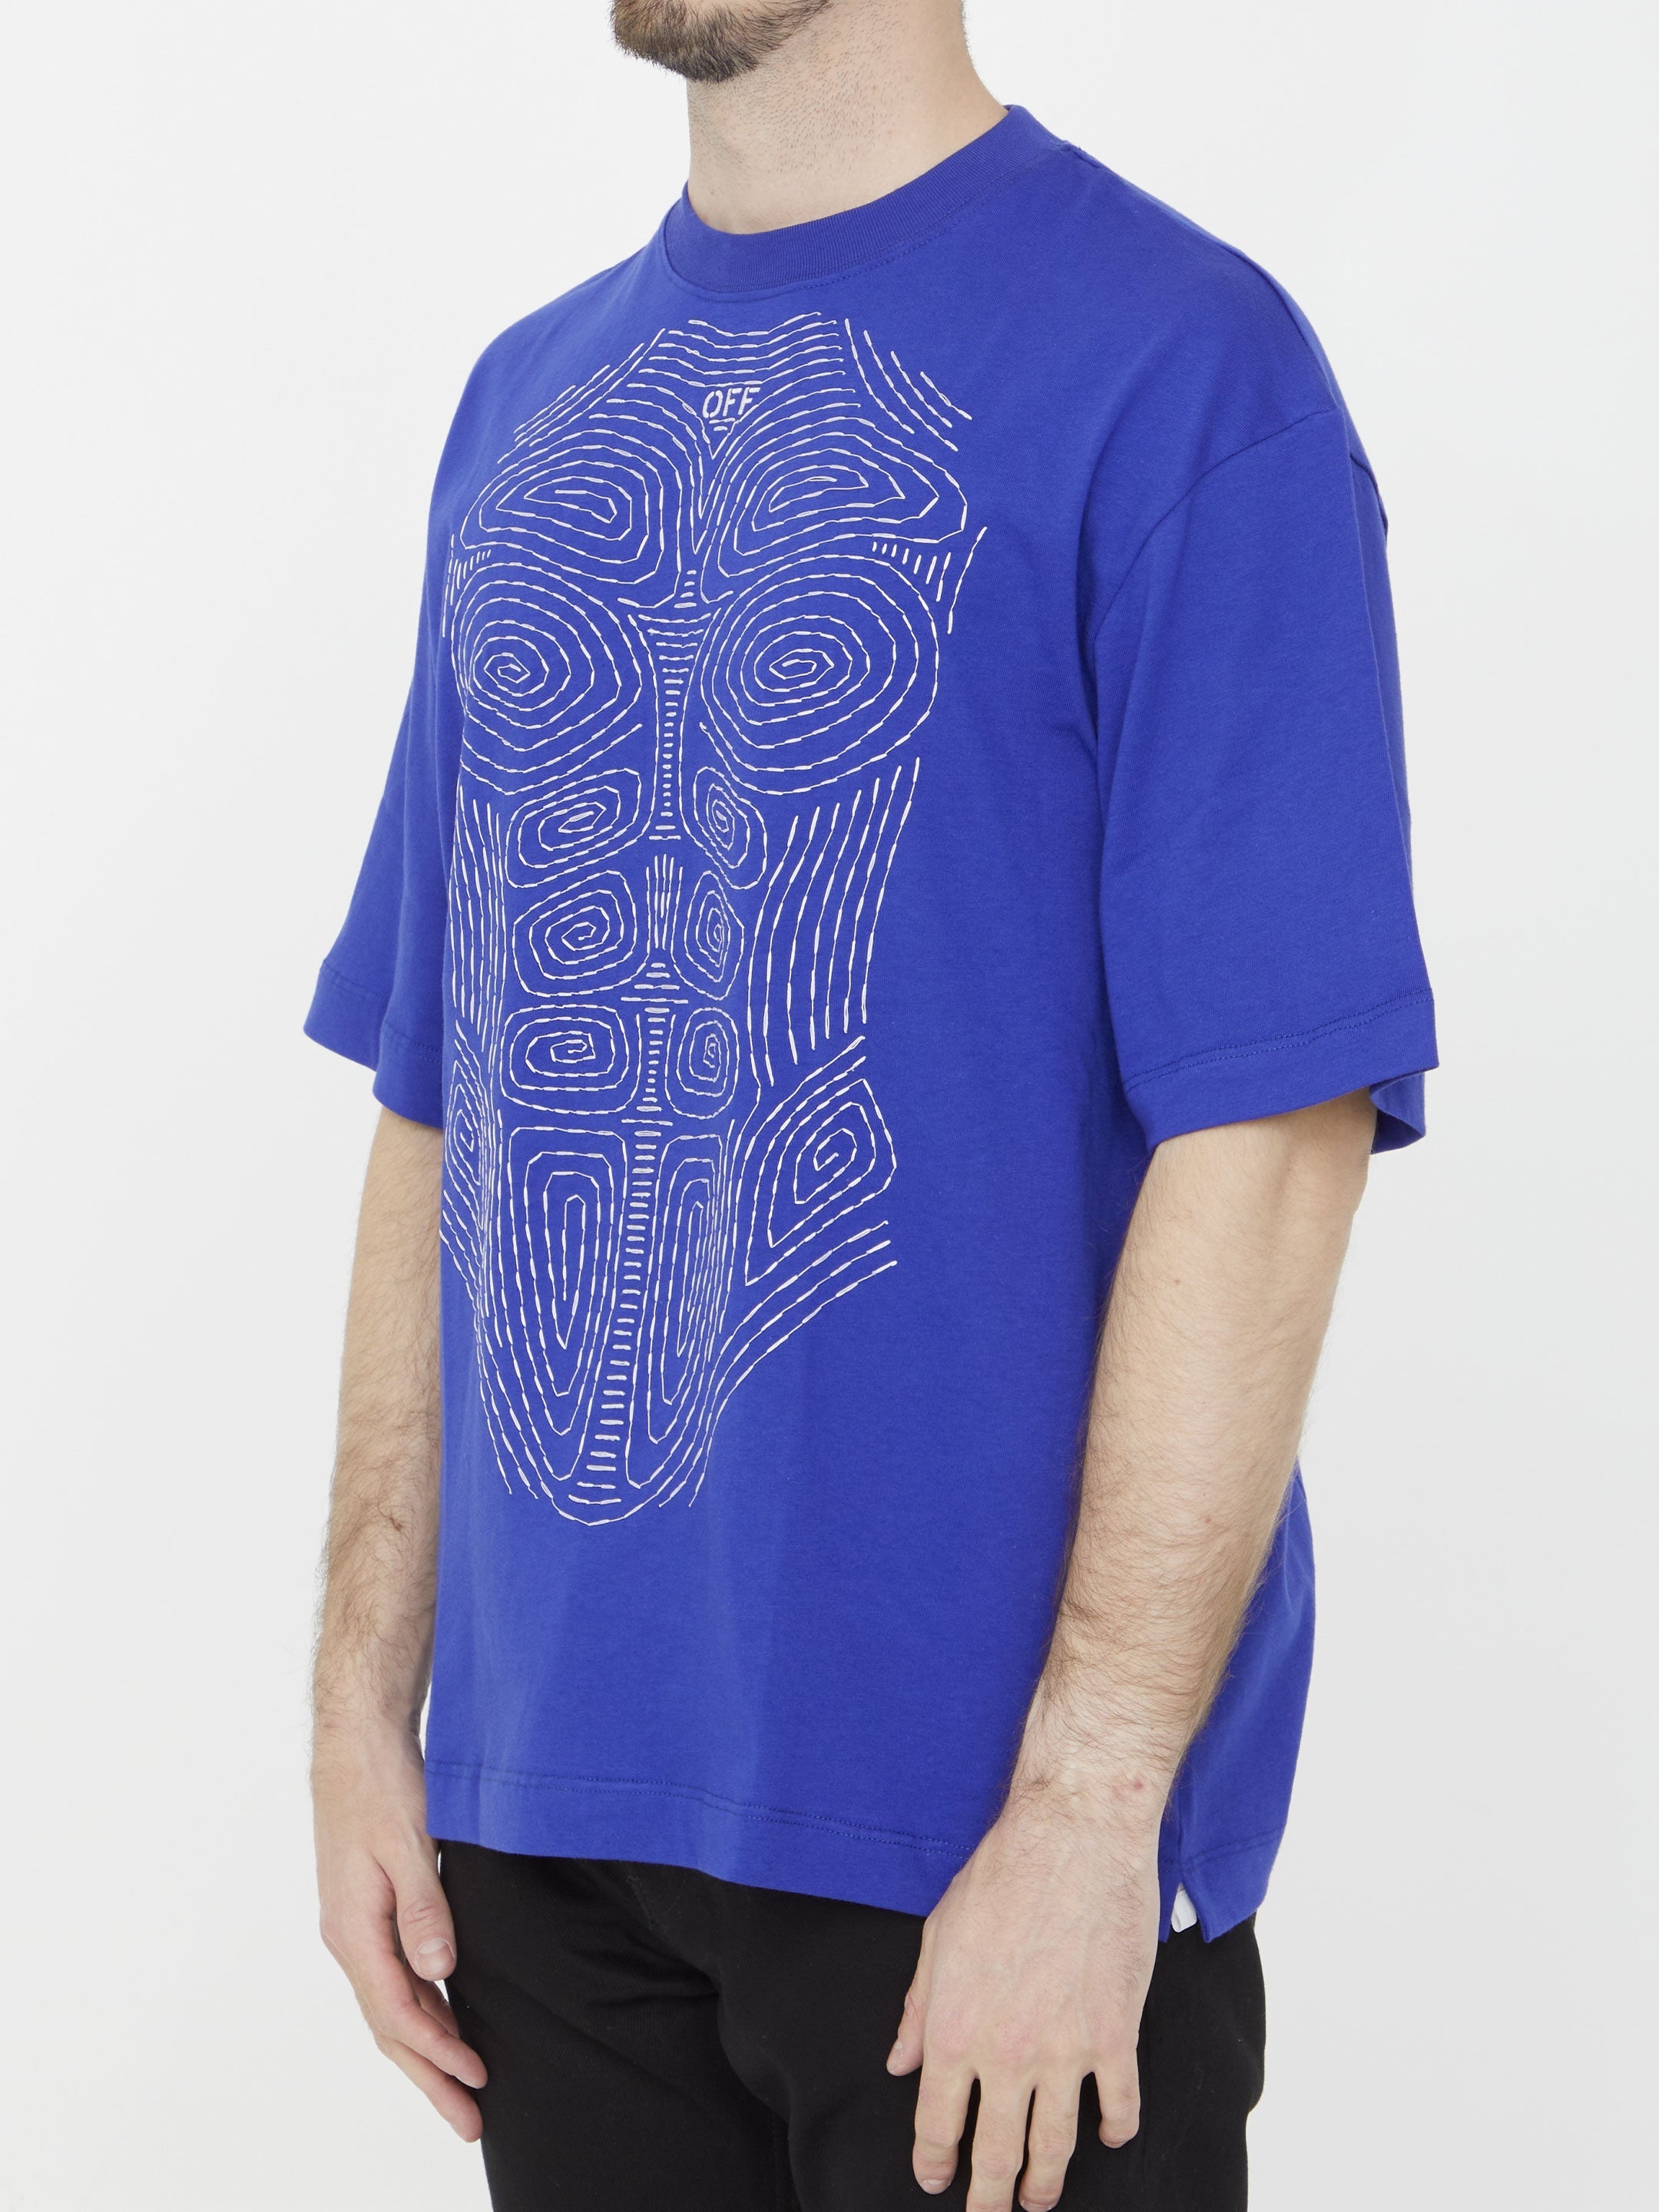 Body Stitch Skate t-shirt